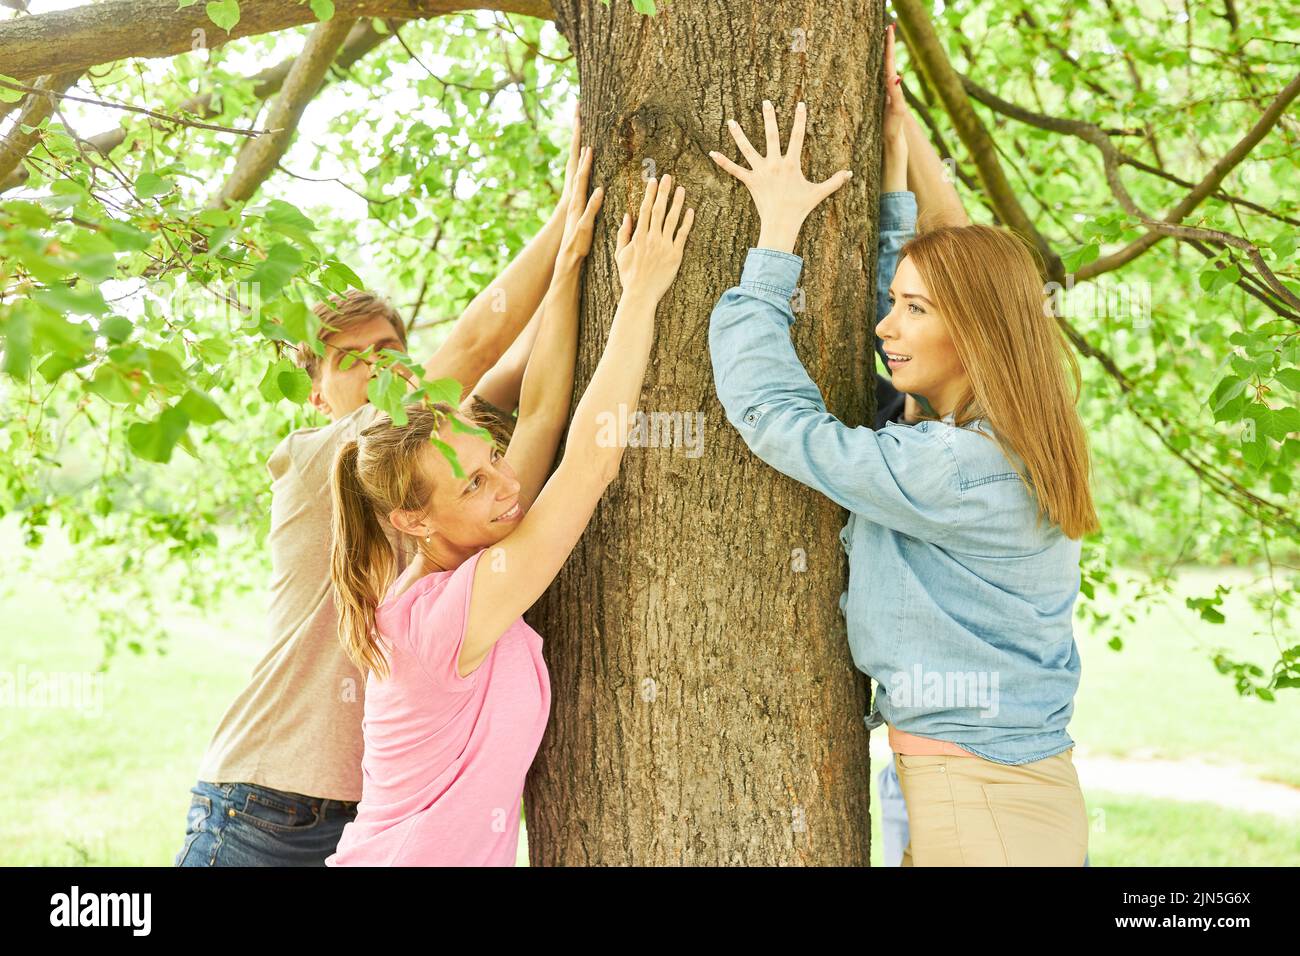 Les jeunes touchent un arbre et ressentent la relaxation comme une décélération Banque D'Images